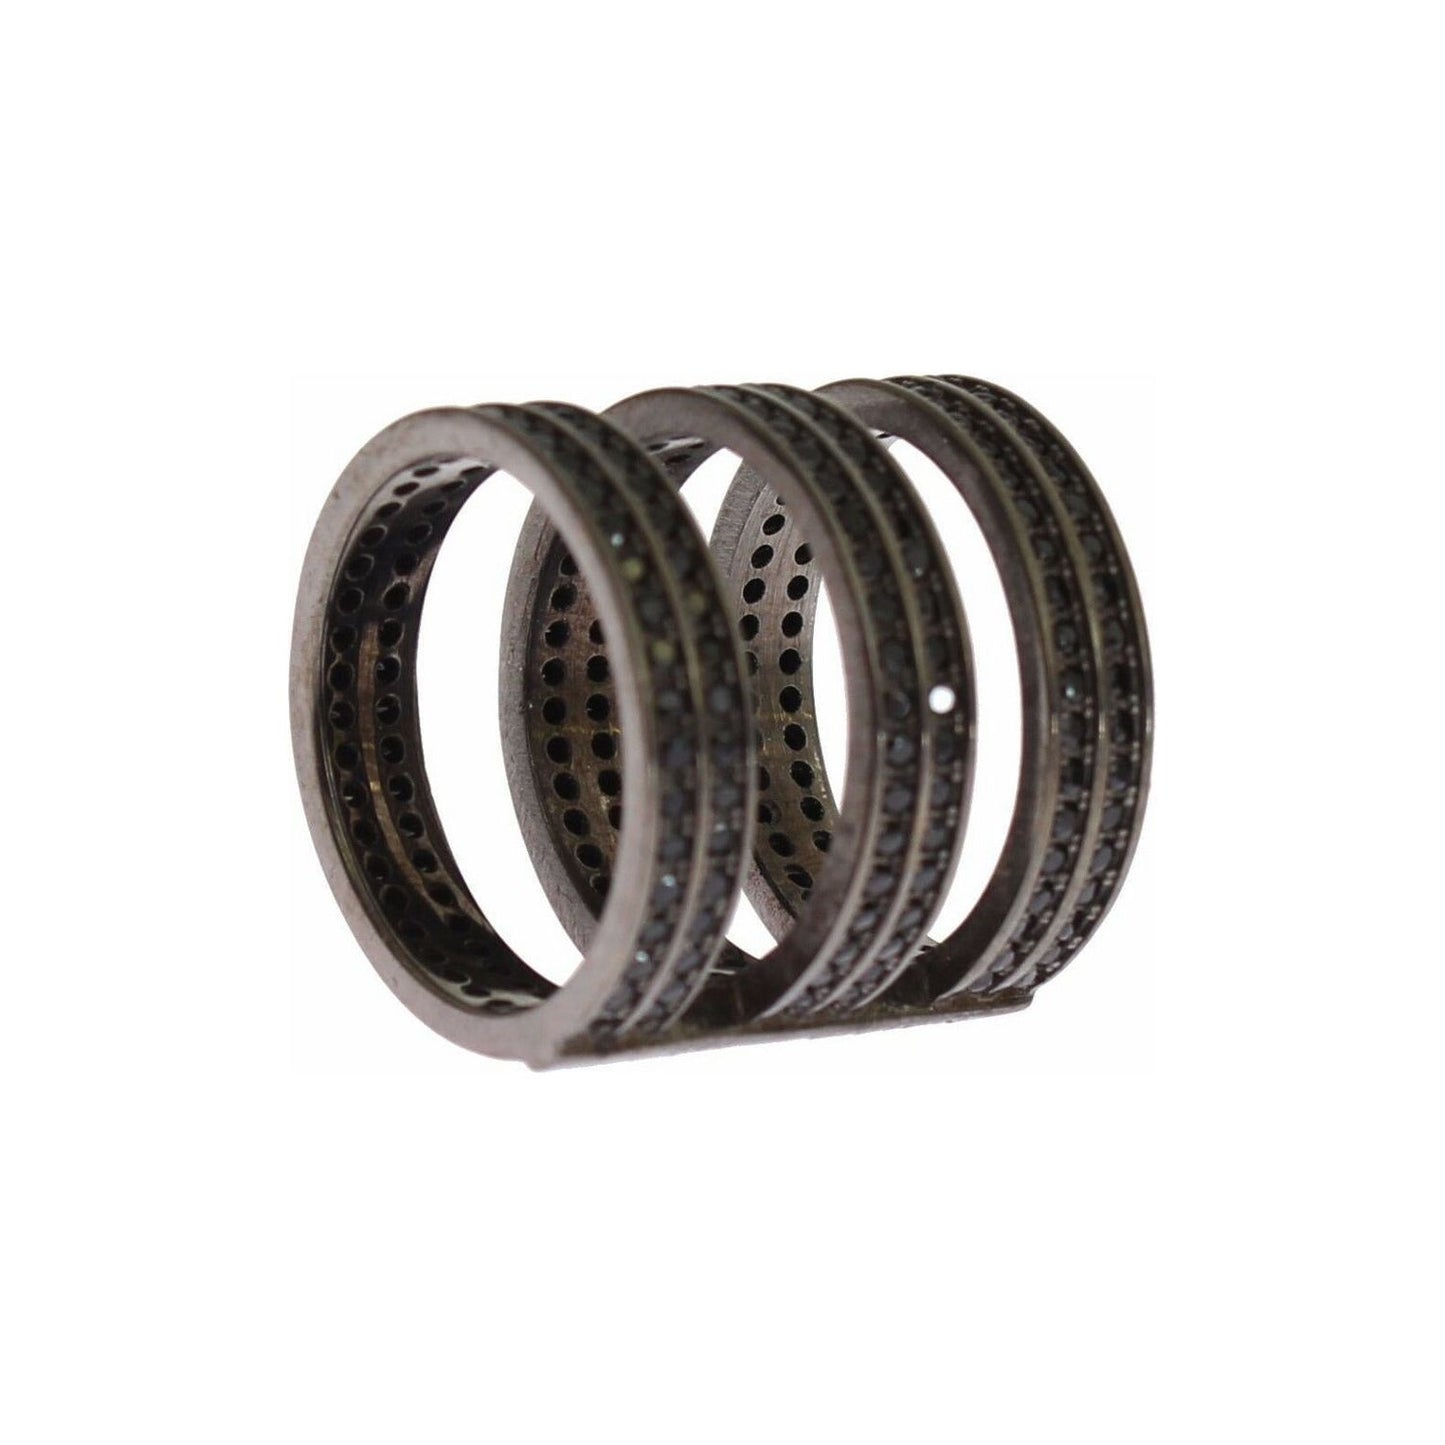 Nialaya Chic Black Crystal Sterling Silver Ring Ring black-cz-rhodium-925-silver-ring s-l1600-78-d7e7ce83-b8f.jpg